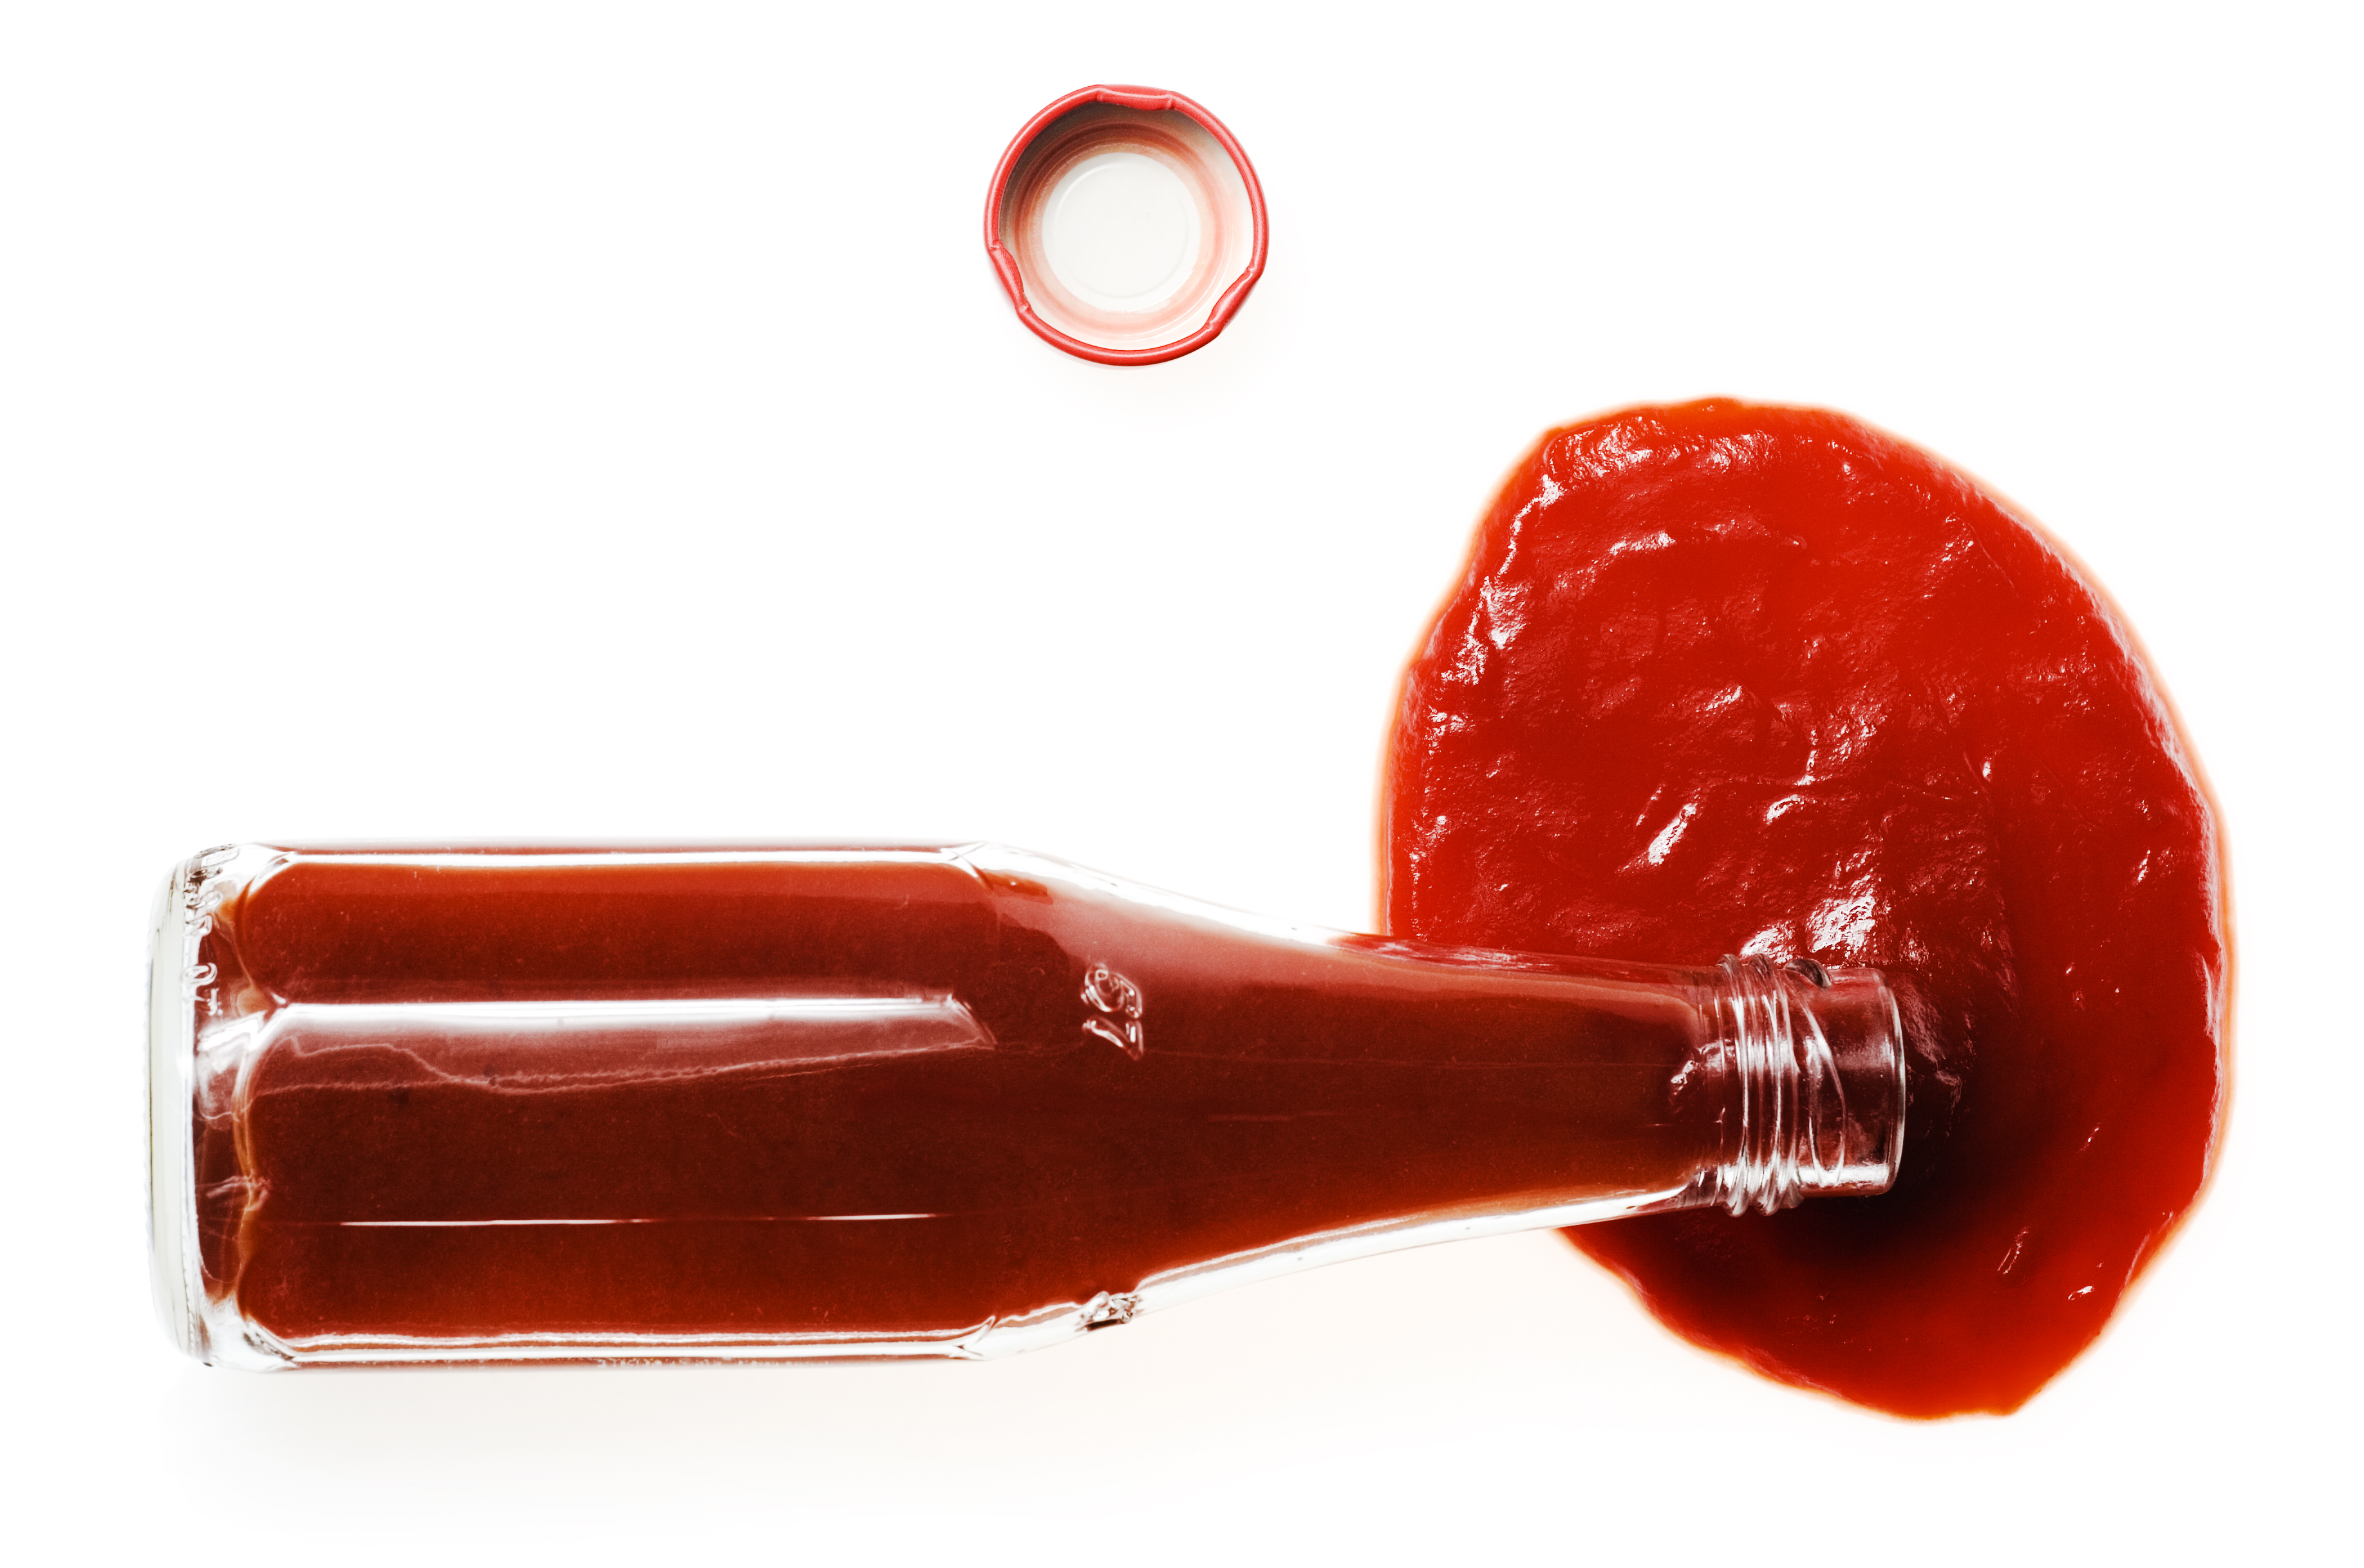 Ketchup photo